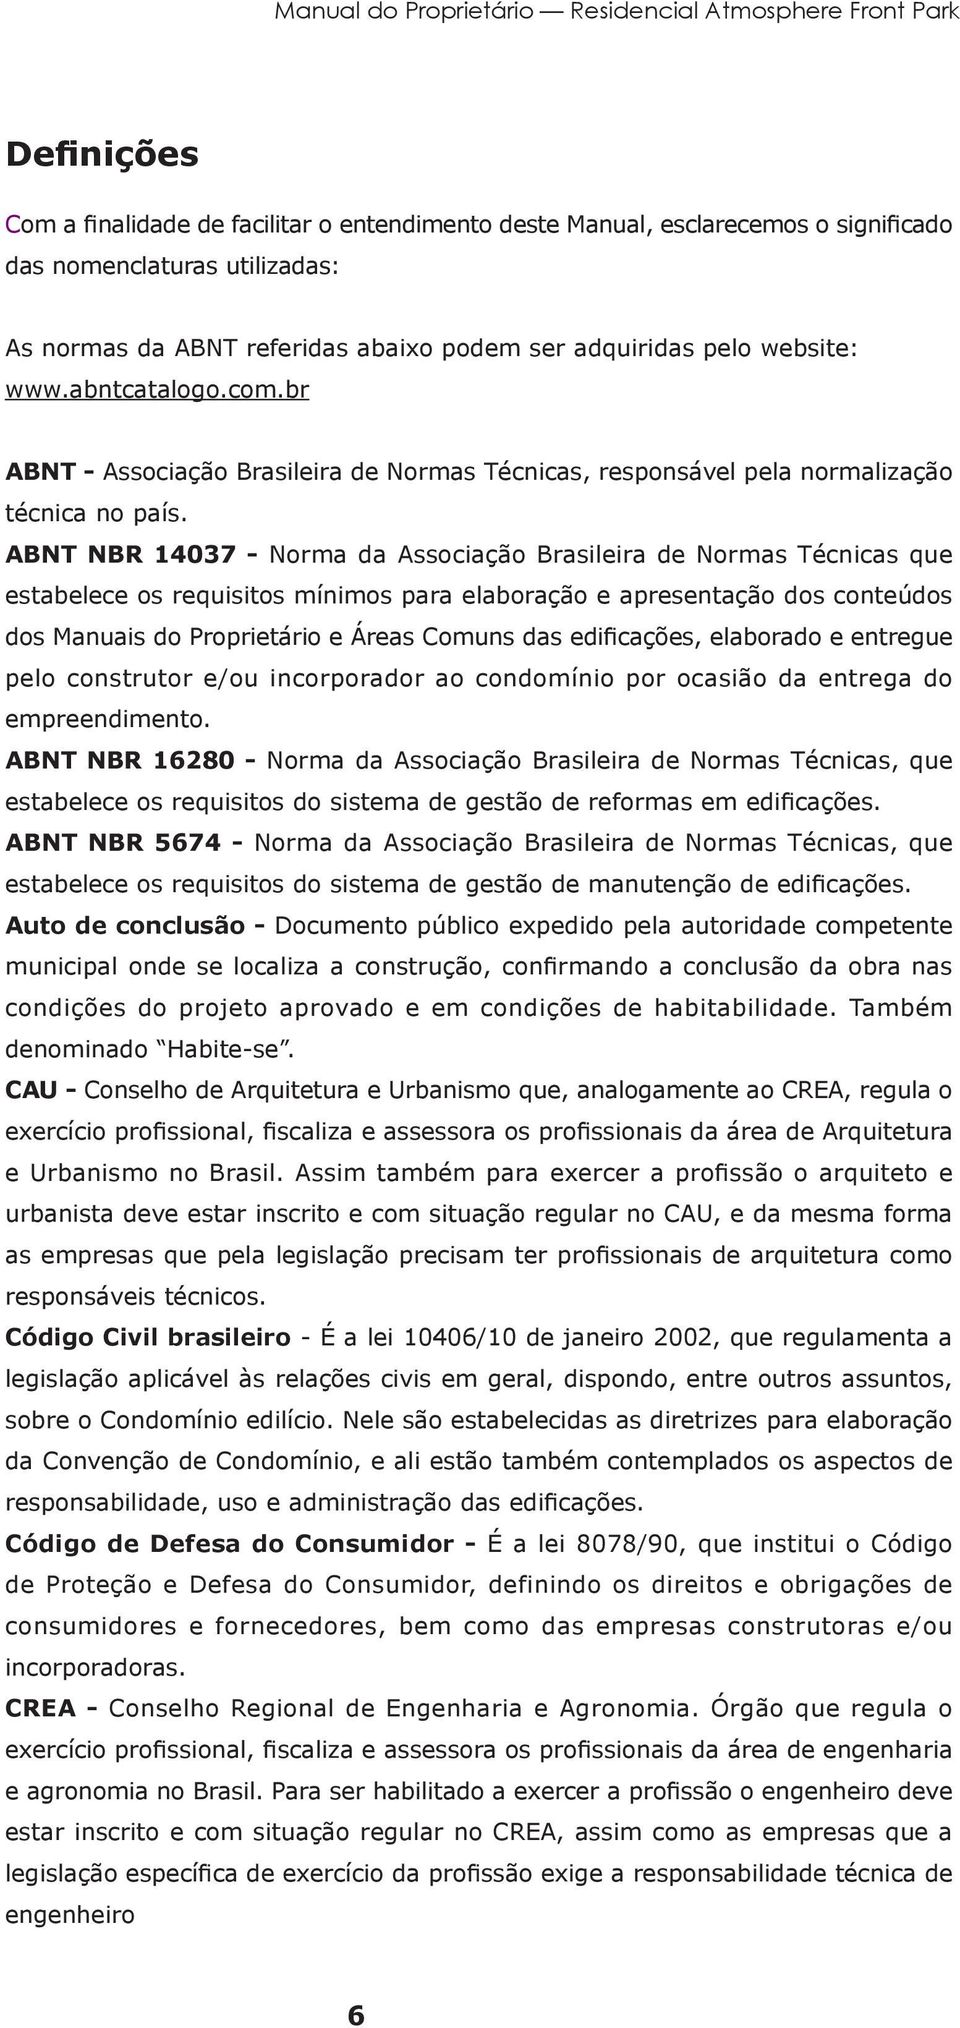 ABNT NBR 14037 - Norma da Associação Brasileira de Normas Técnicas que estabelece os requisitos mínimos para elaboração e apresentação dos conteúdos dos Manuais do Proprietário e Áreas Comuns das